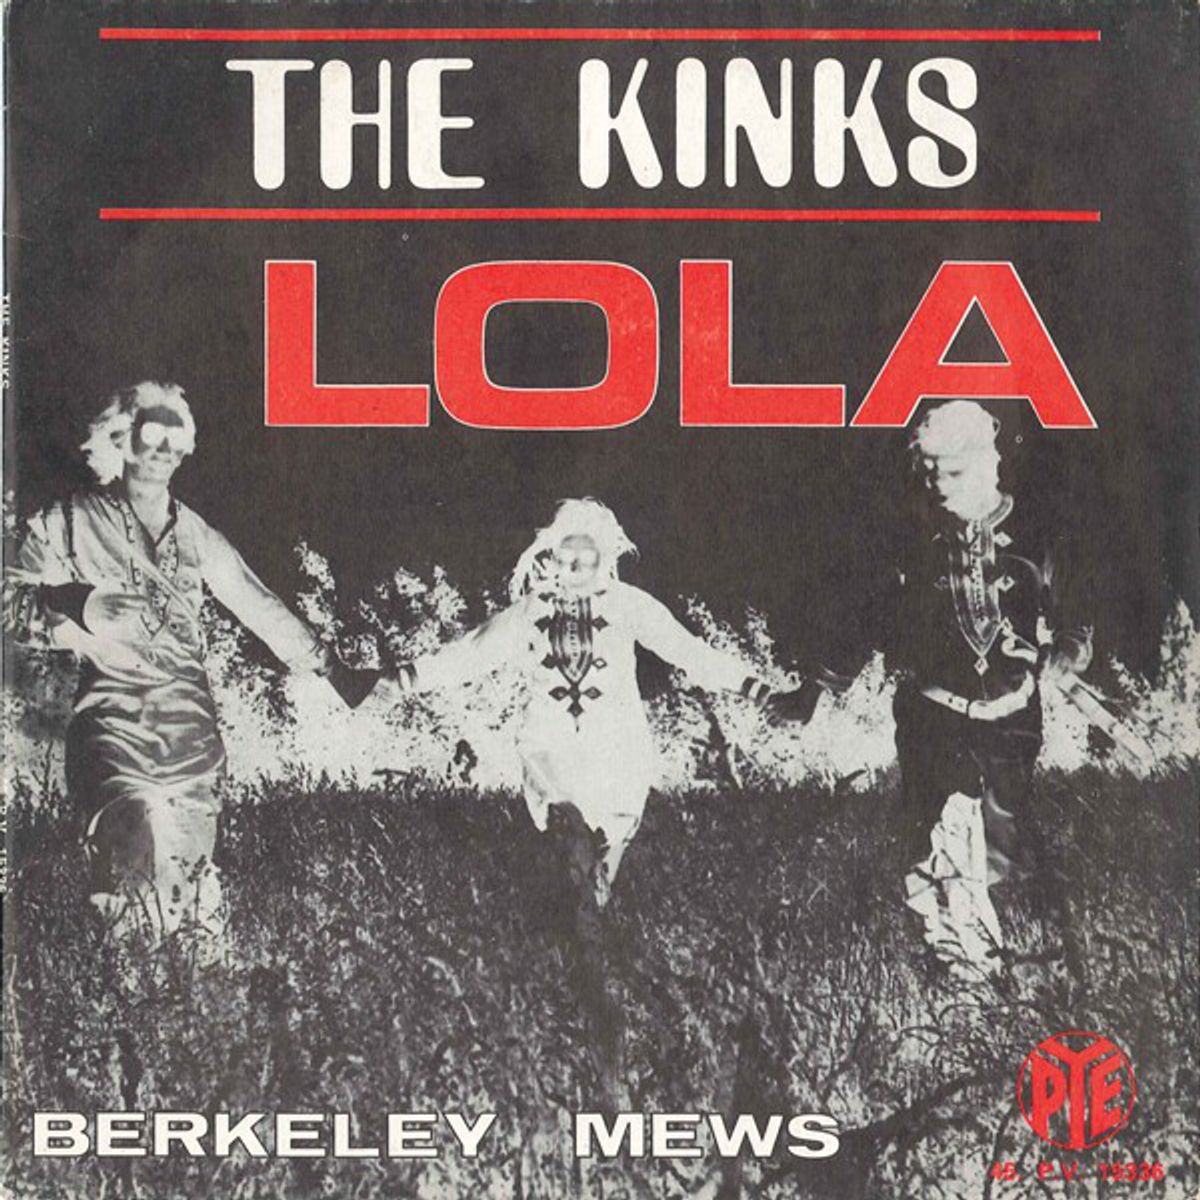 #Sttttotter - The Kinks - Lola (1970)